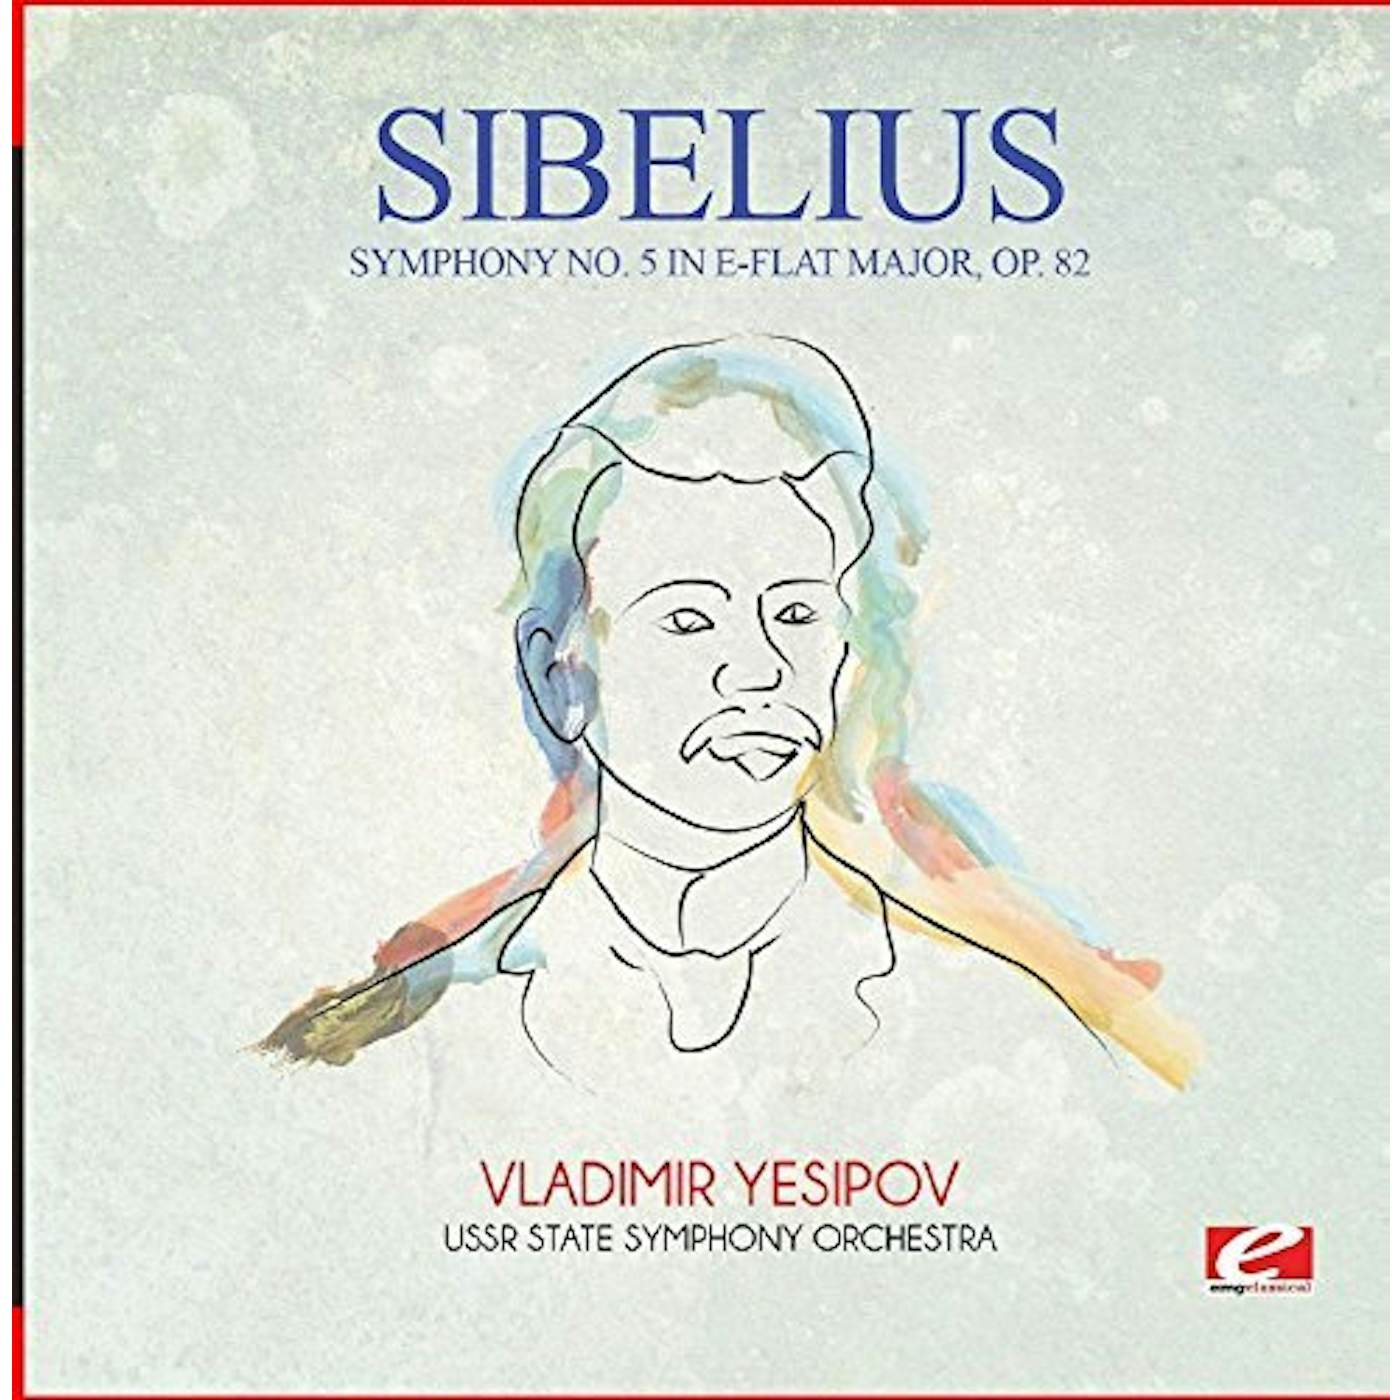 Sibelius SYMPHONY NO. 5 IN E-FLAT MAJOR OP. 82 CD